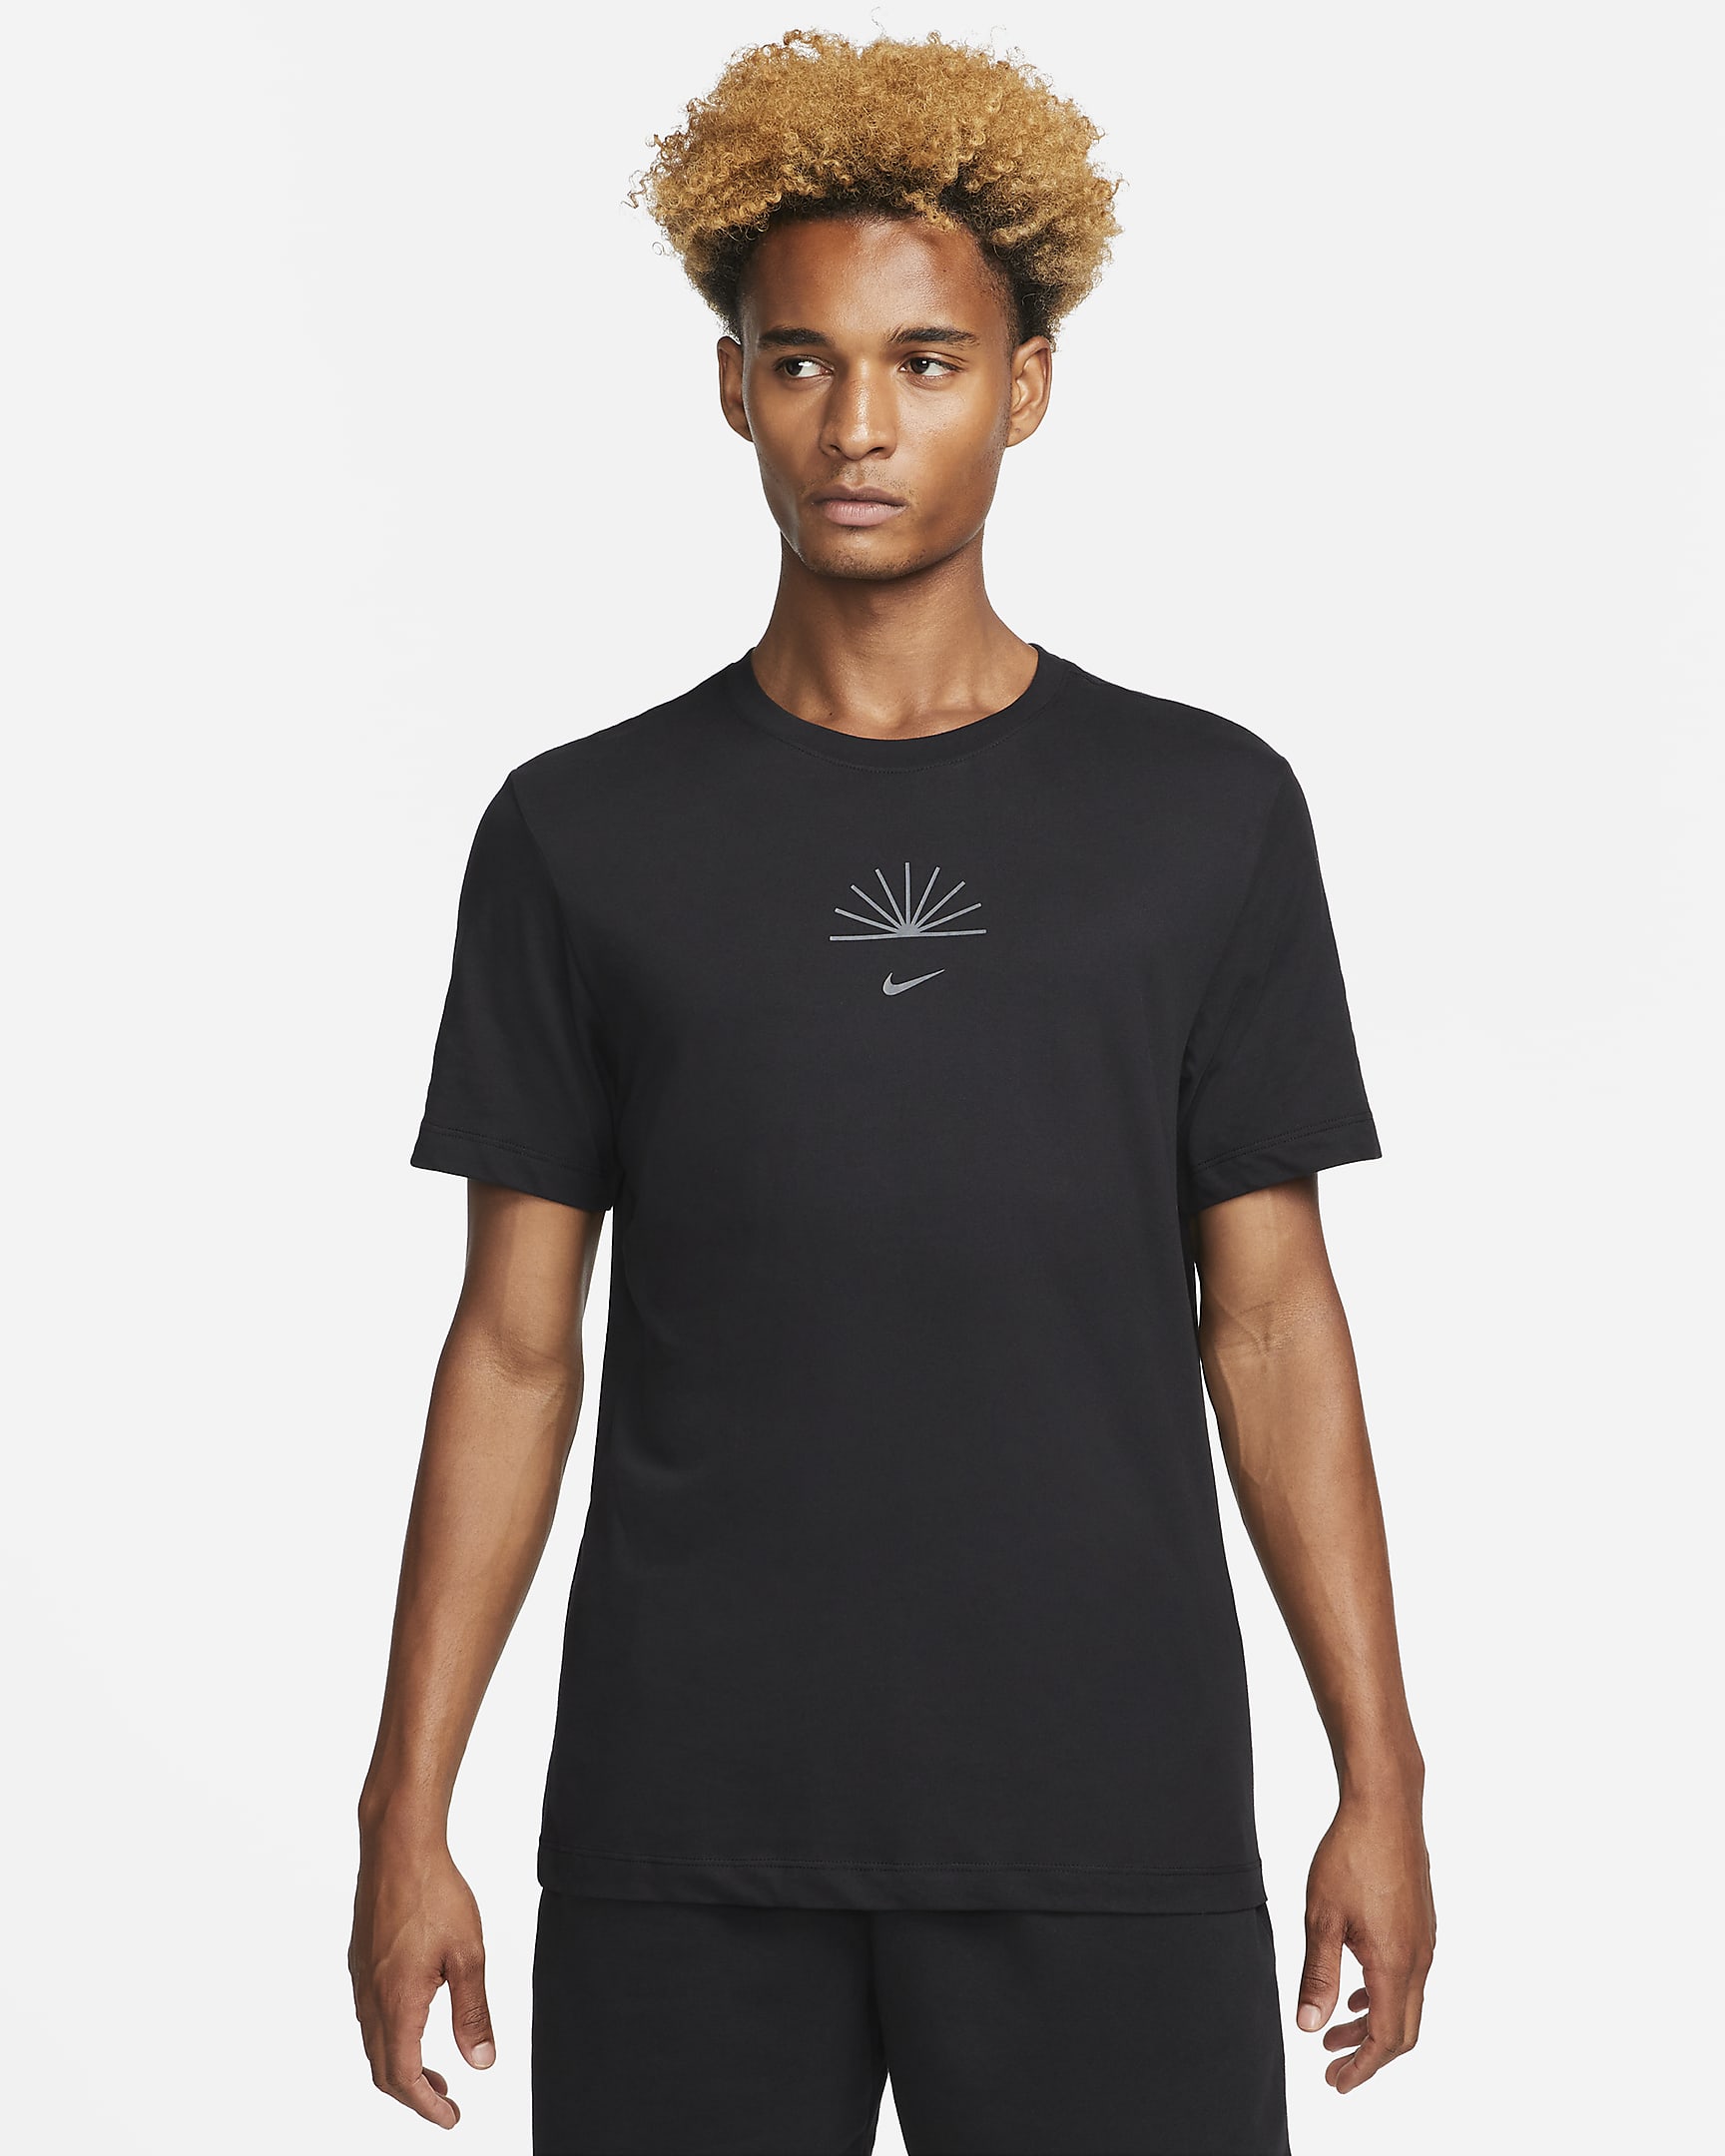 Nike Dri-FIT Men's Yoga T-Shirt. Nike.com